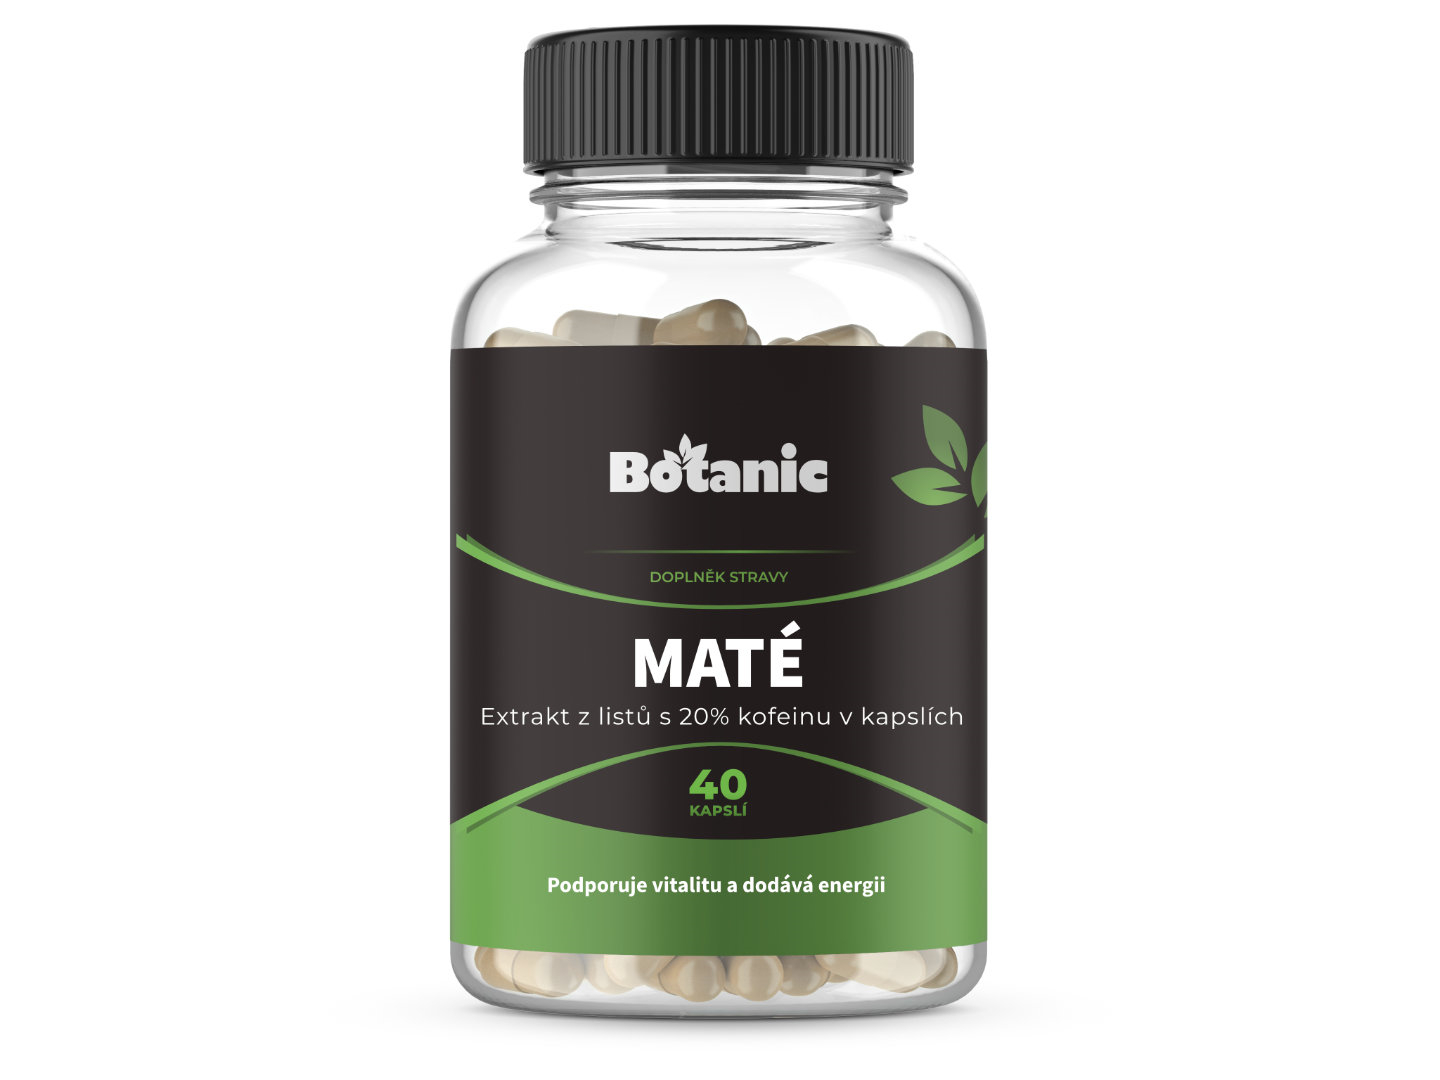 Botanic Maté - Extrakt z listů s 20% kofeinu v kapslích 40kap.